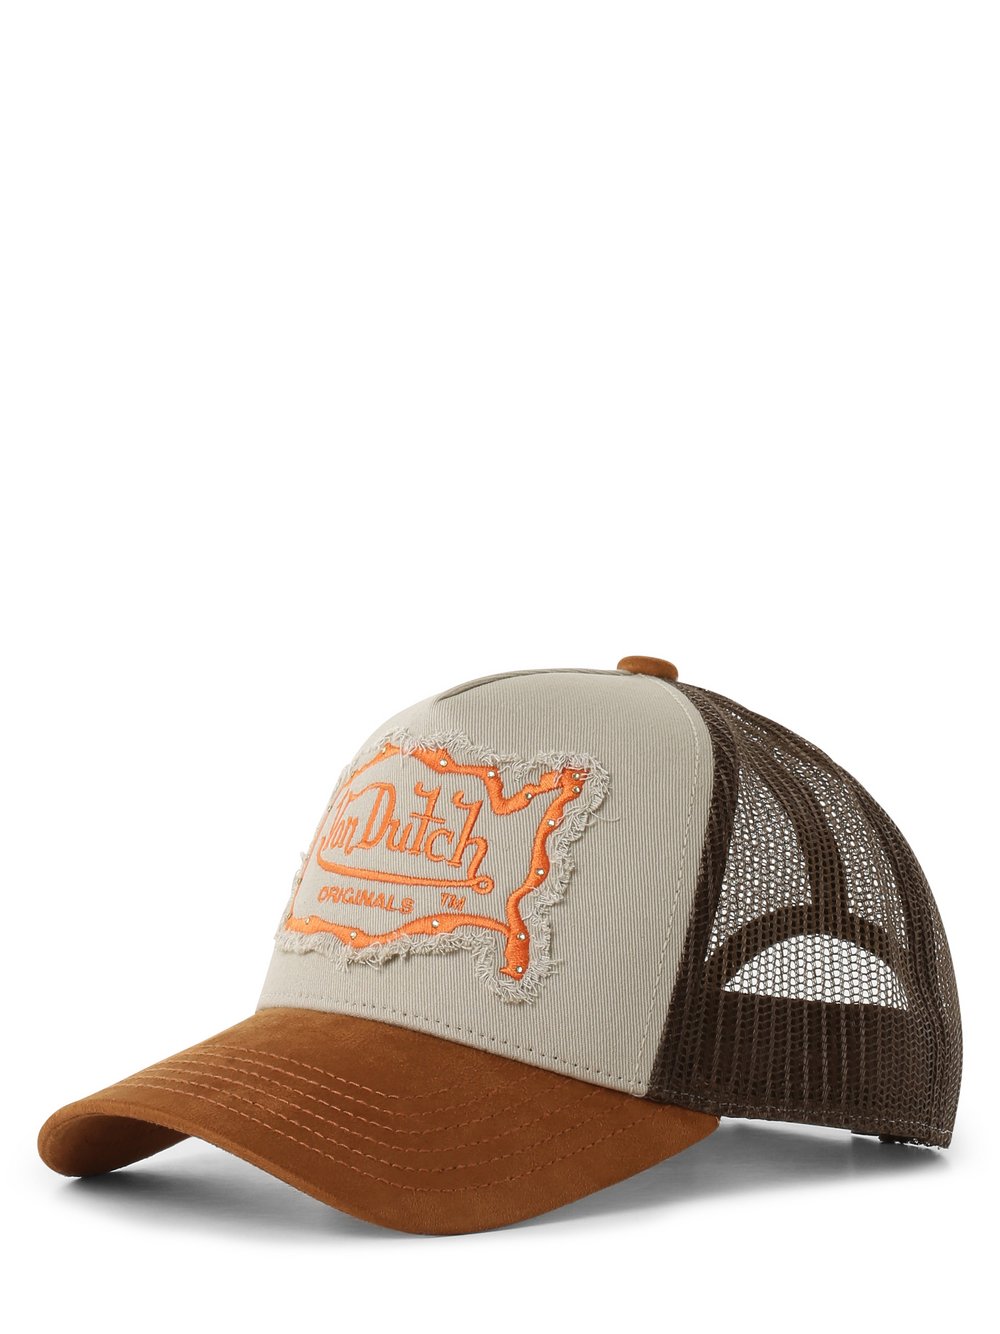 Von Dutch - Damska czapka z daszkiem  Trucker Arizona, beżowy|brązowy|pomarańczowy